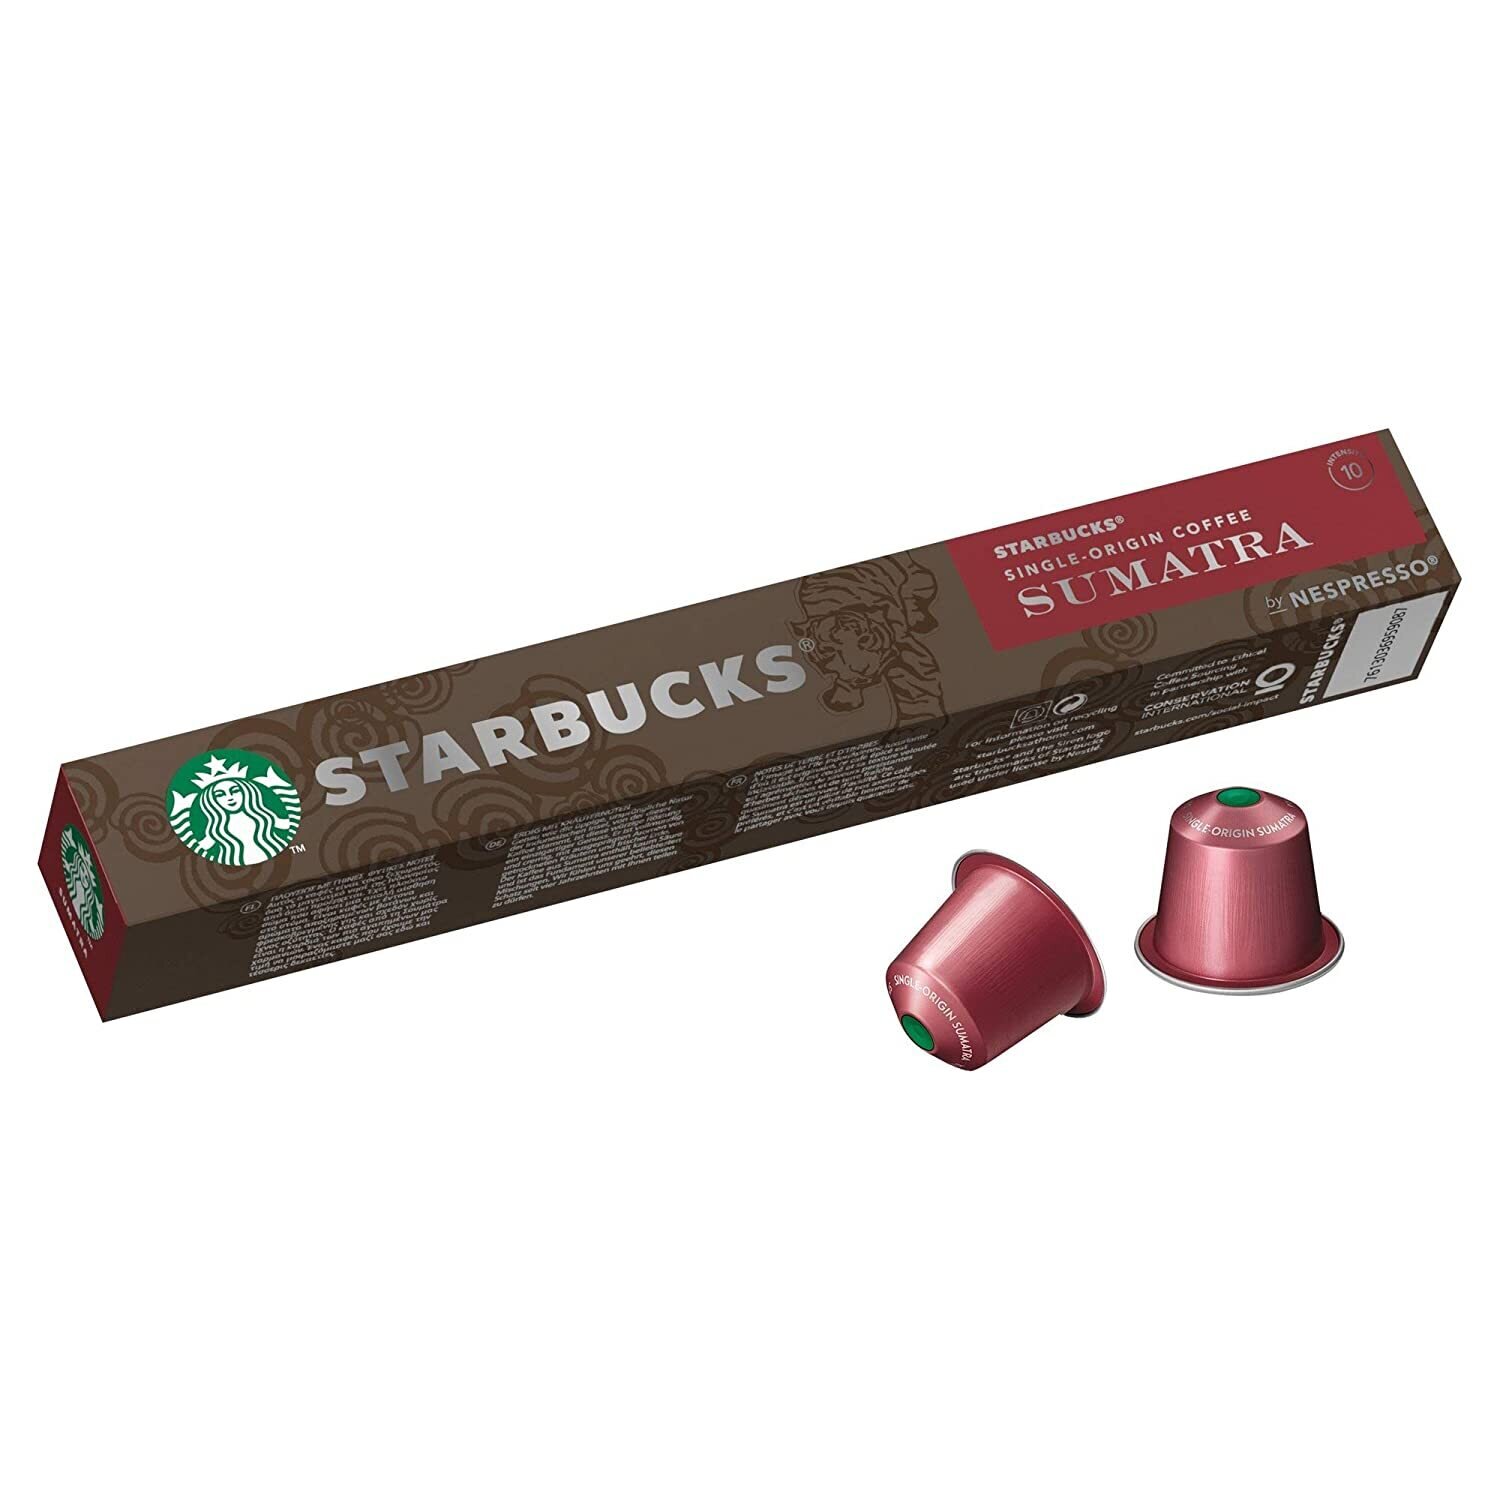 Nespresso Starbucks Sumatra 10 Pods